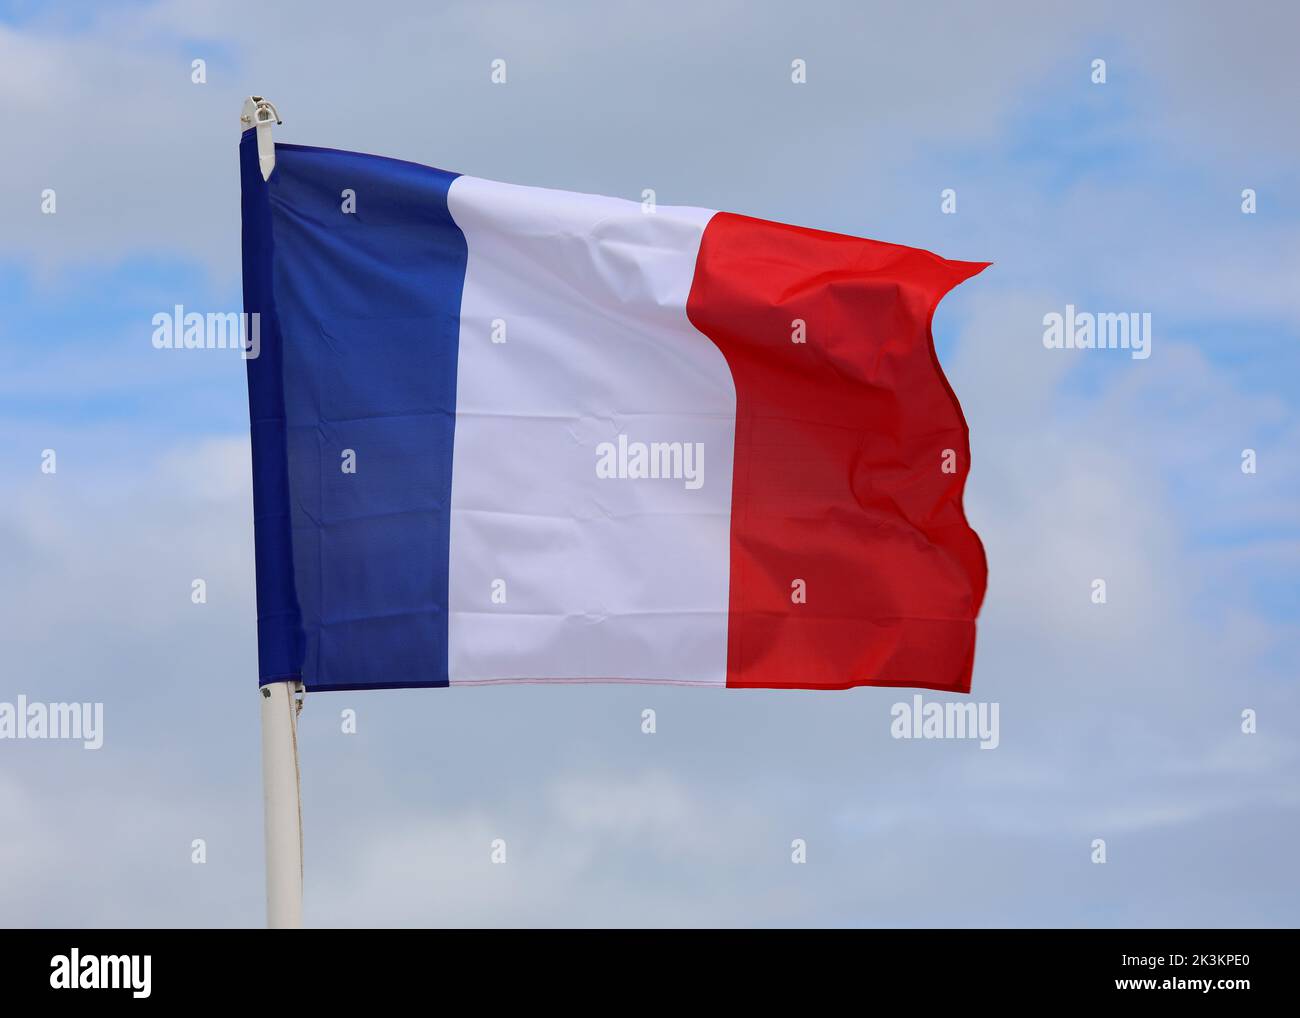 Gran Bandera Francesa Azul Ondas blancas y rojas en el cielo azul sin gente Foto de stock